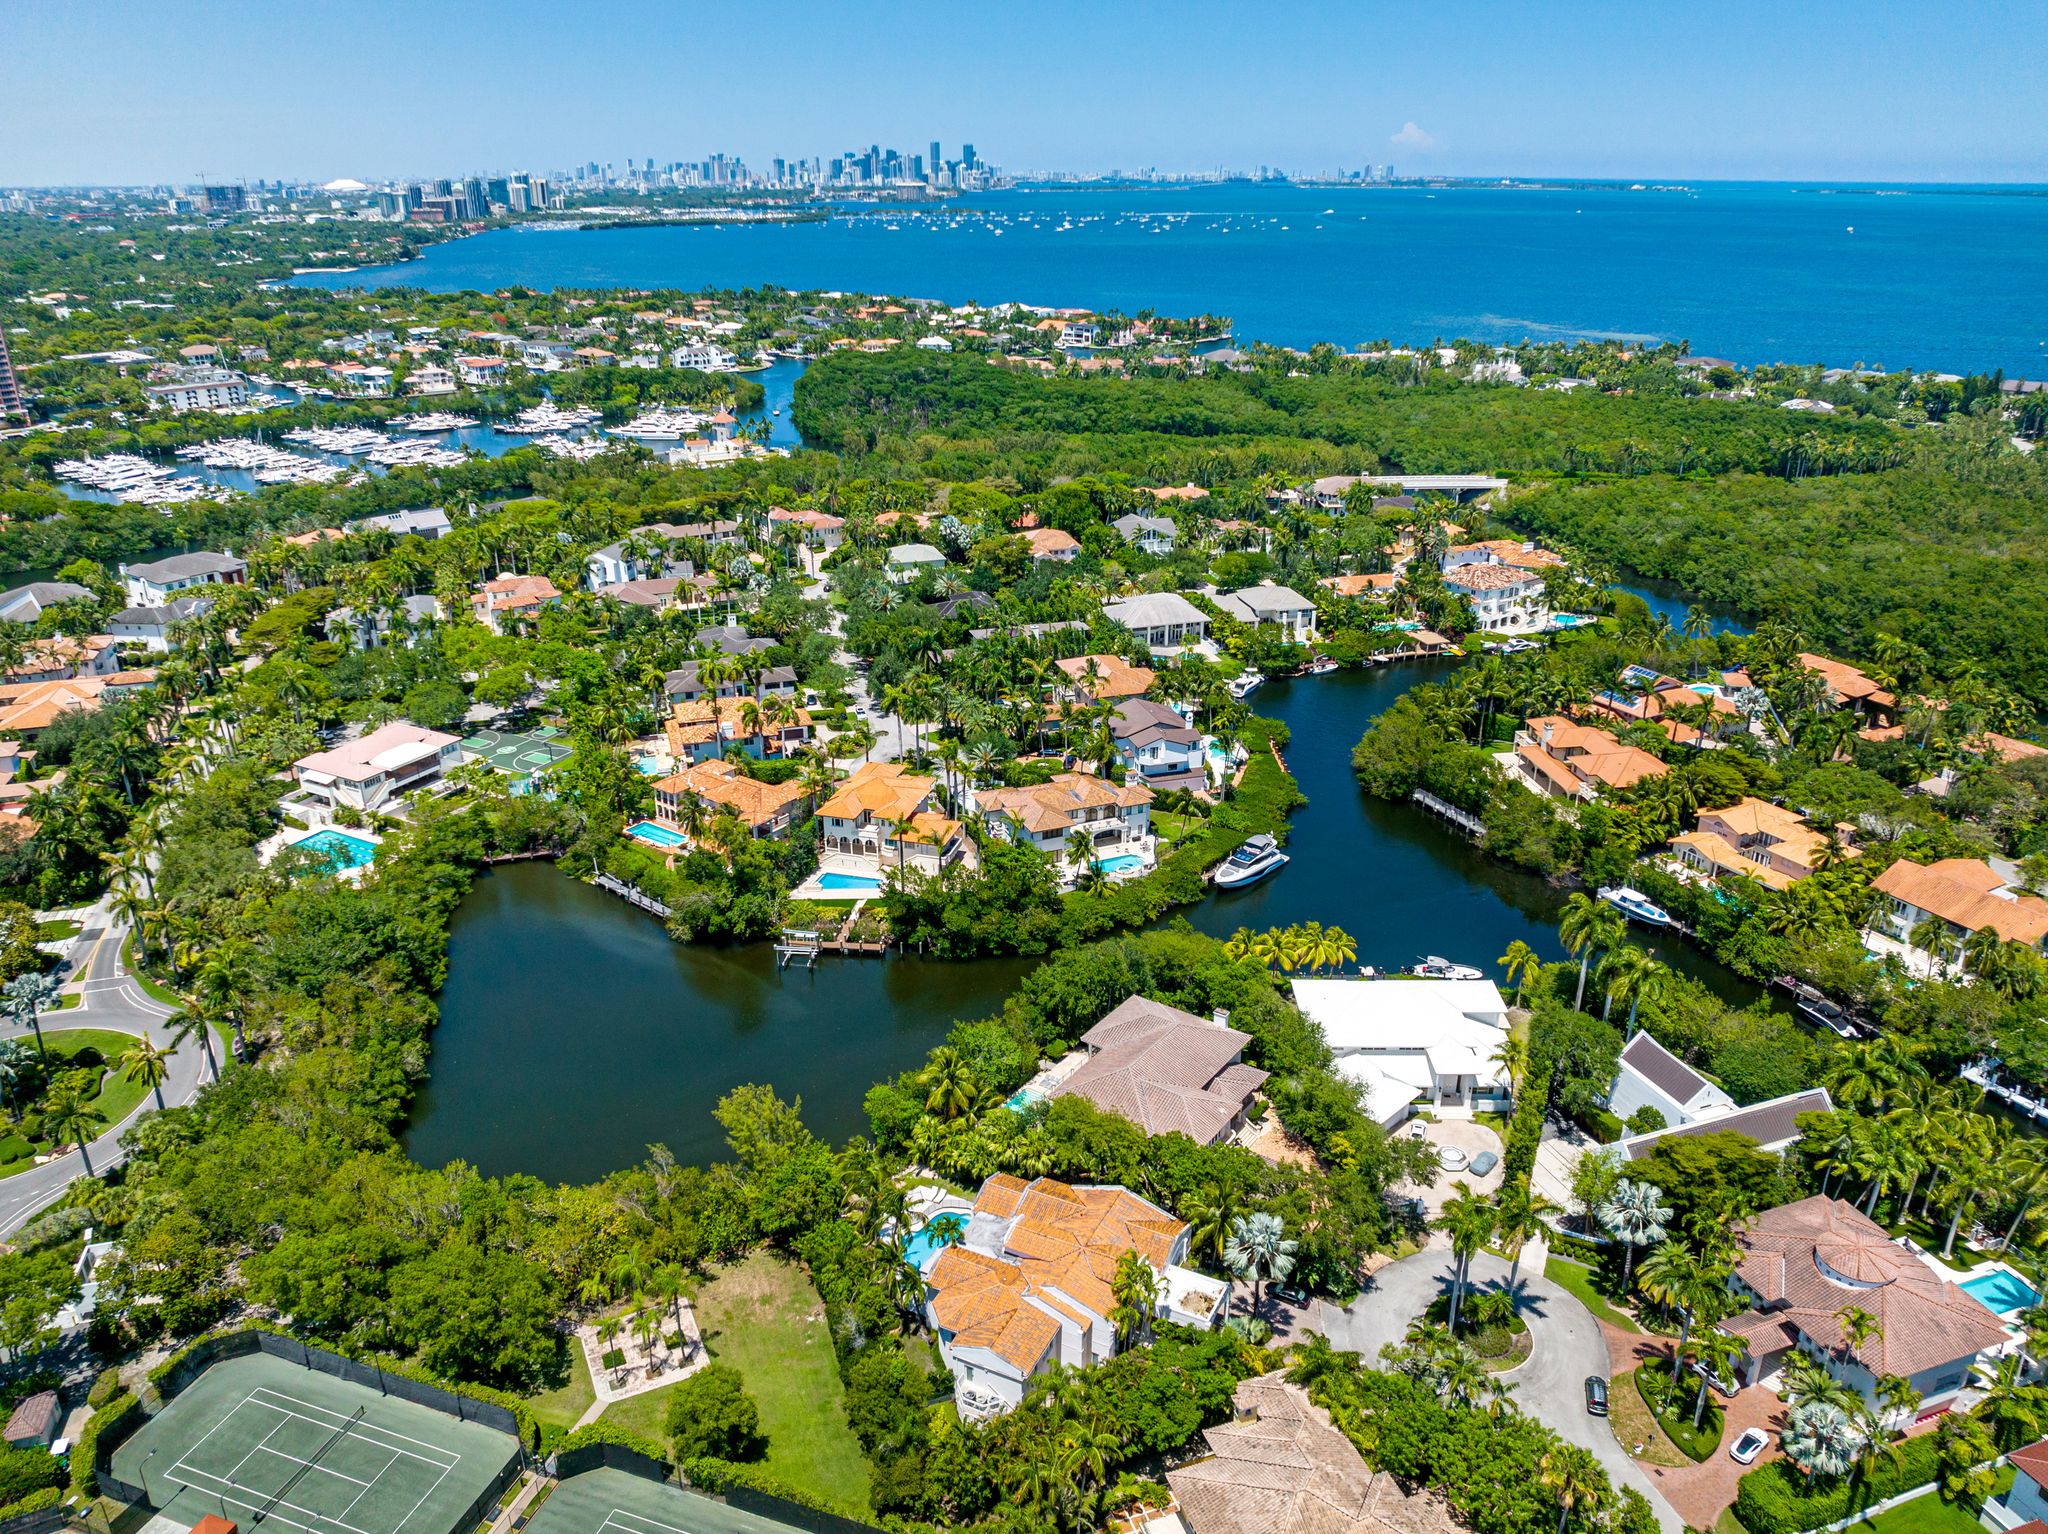 Les experts du Sud de la Floride s’expriment sur les prévisions régionales en matière d’immobilier pour 2023